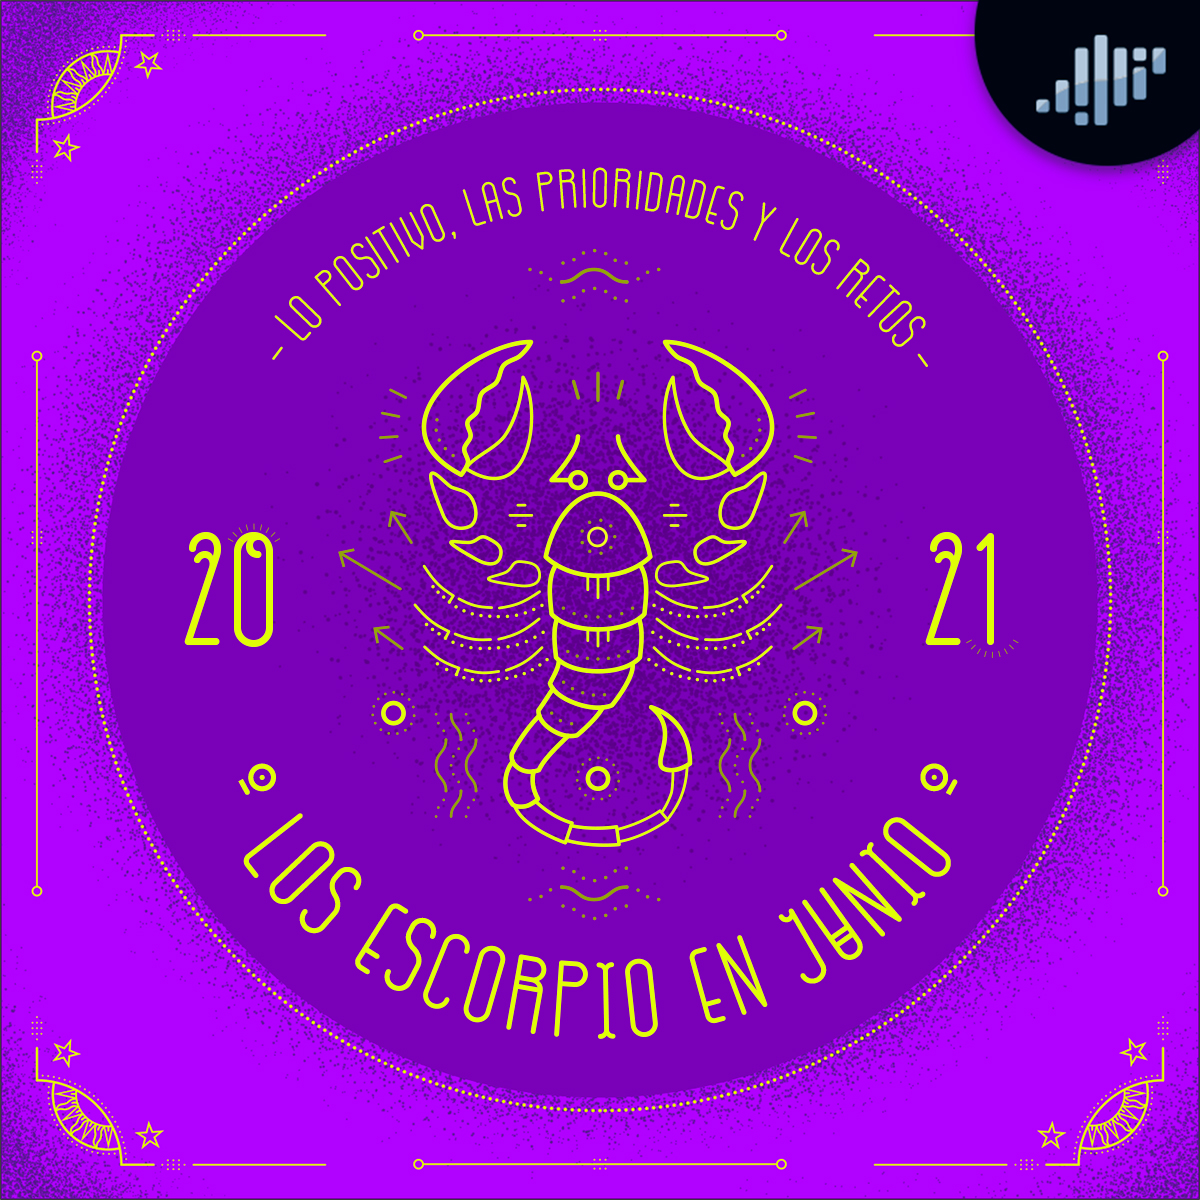 Podcast de astrología | Escorpio en junio de 2021 | Signos Zodiacales